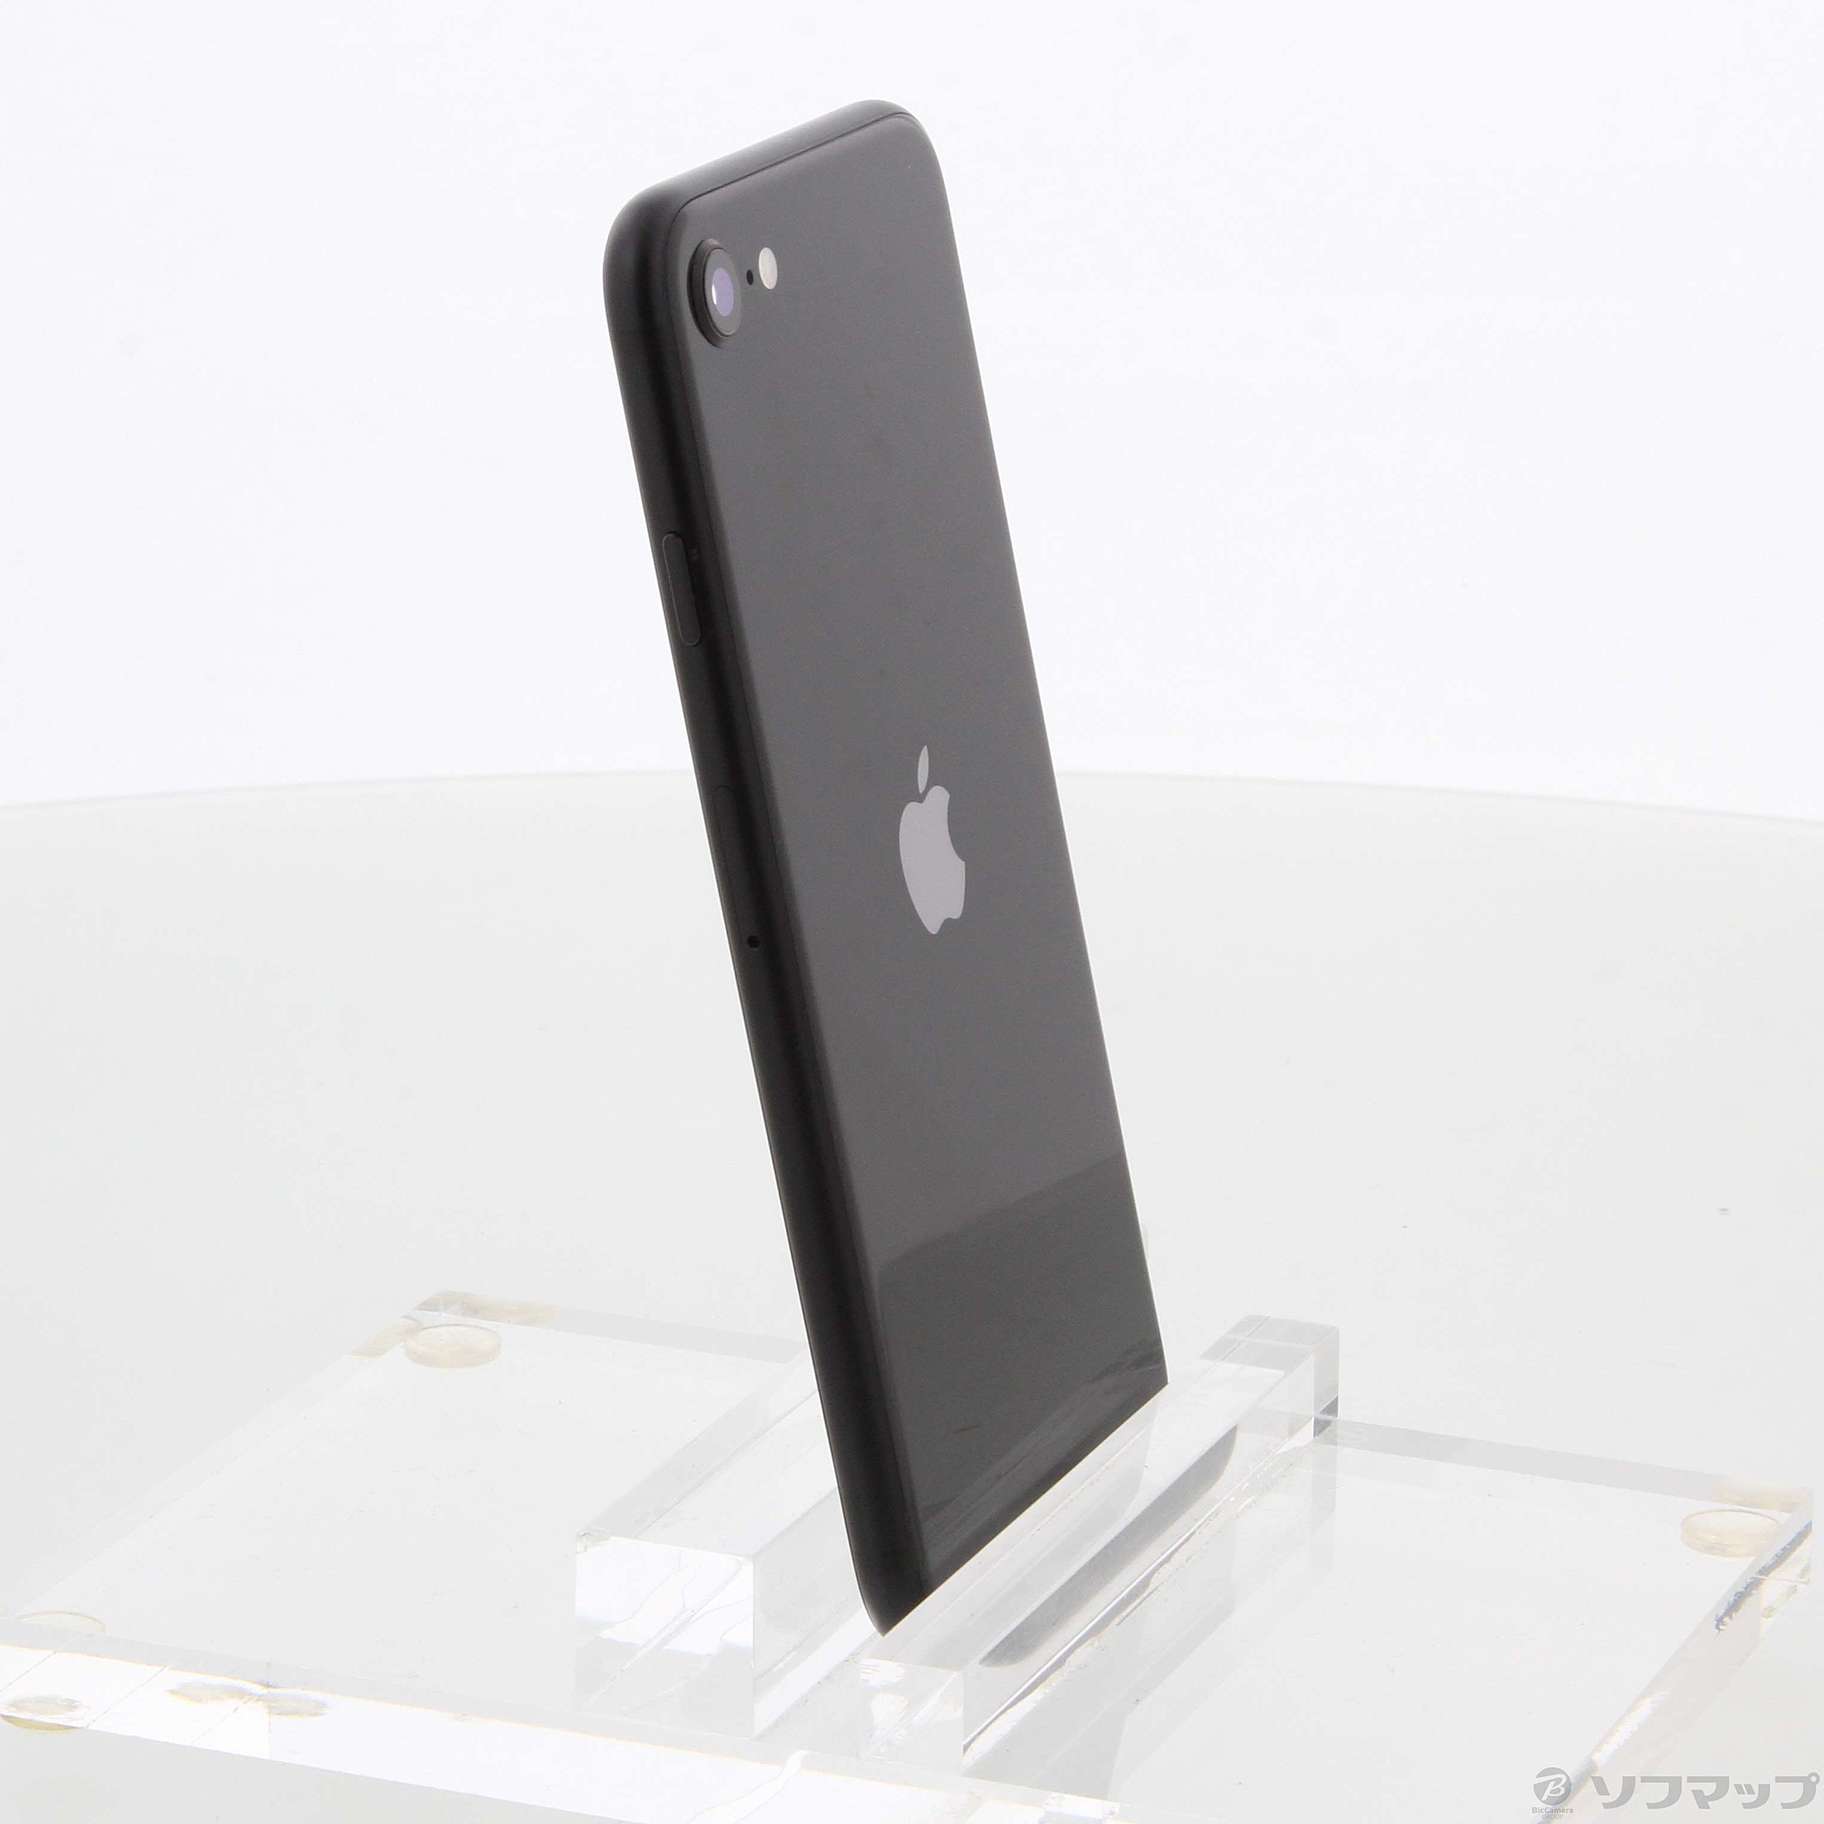 Apple iPhone SE 第2世代 64GB ブラック MHGP3J/A - スマートフォン本体